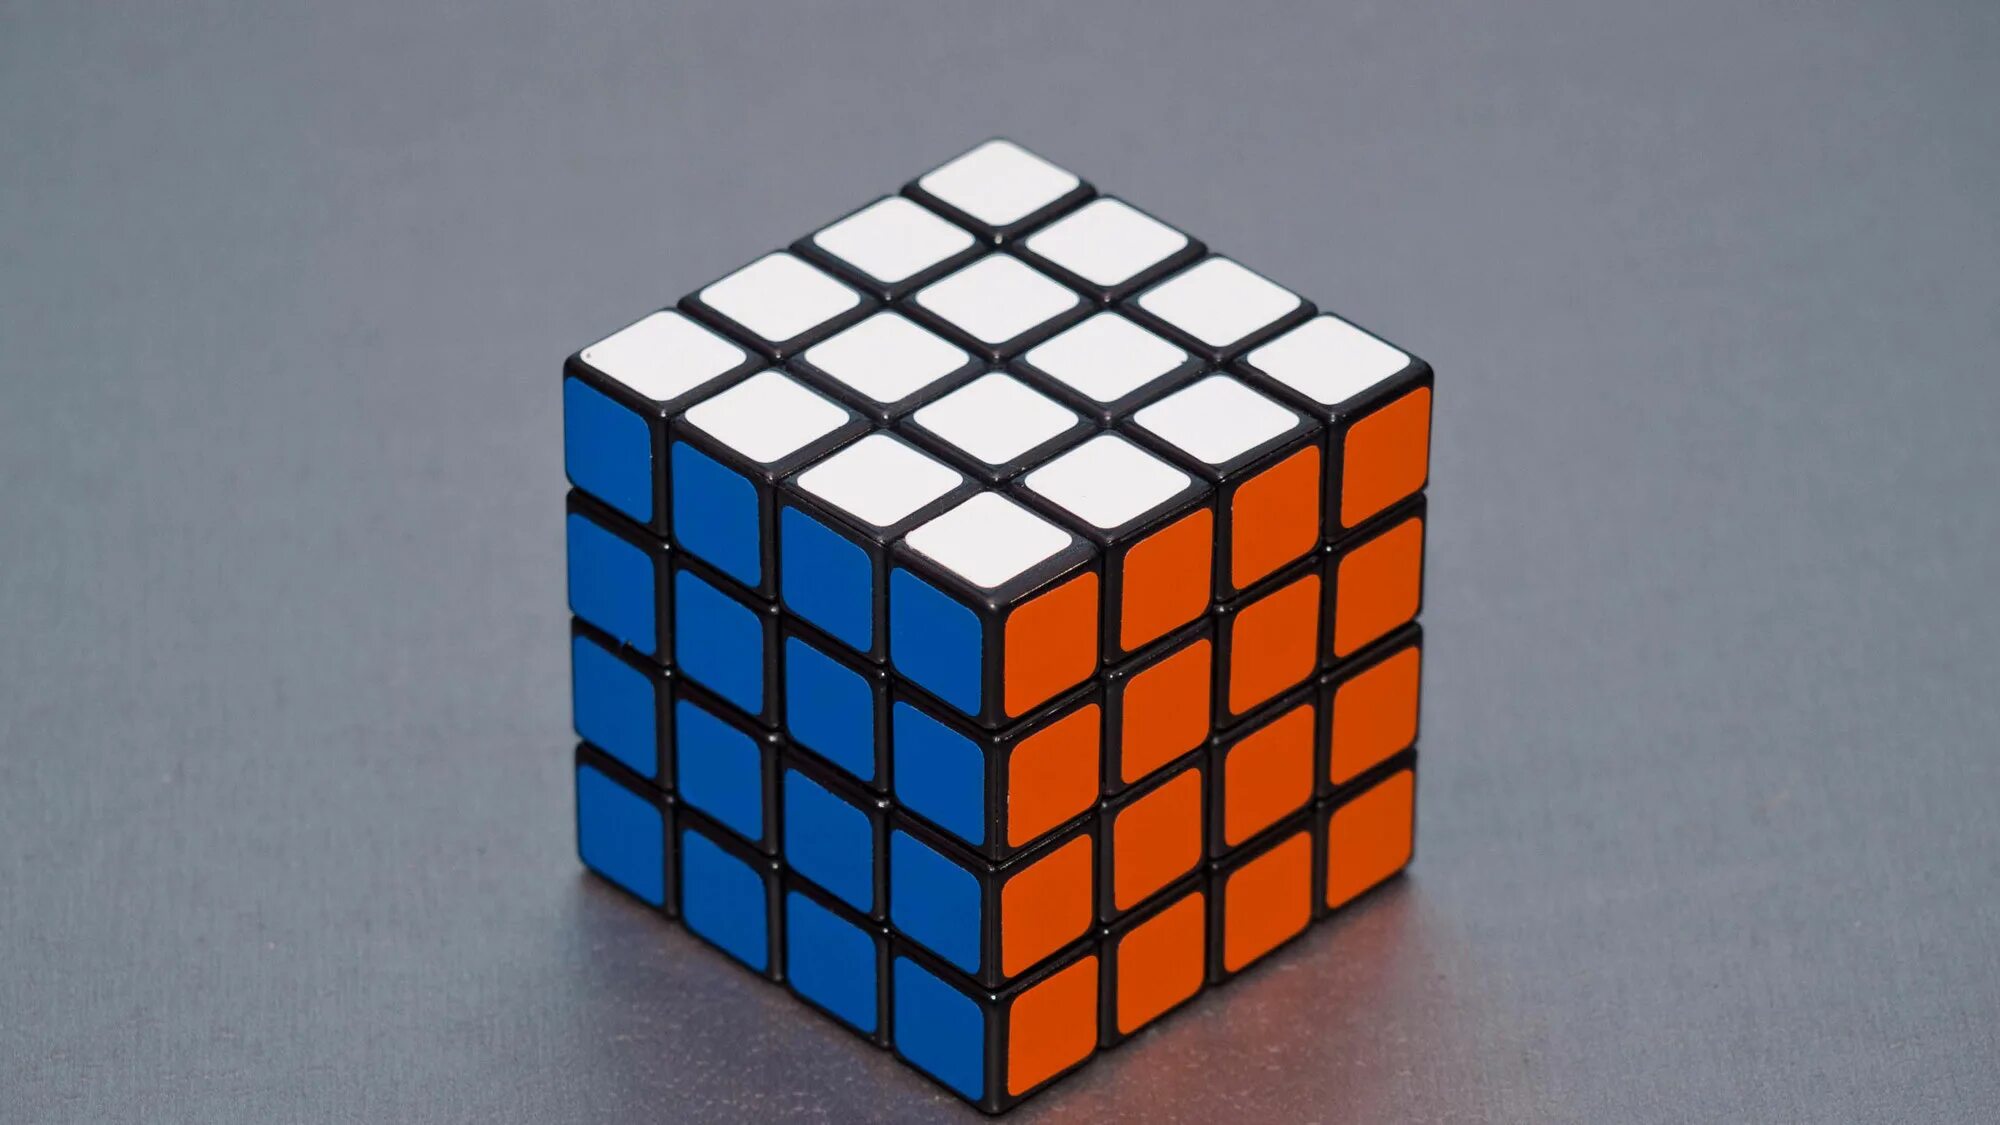 Кубик рубика воде. Кубик рубик 4х4. Кубик рубик 4 на 4. 4x4x4 Cube. Rubik's Cube 4x4.